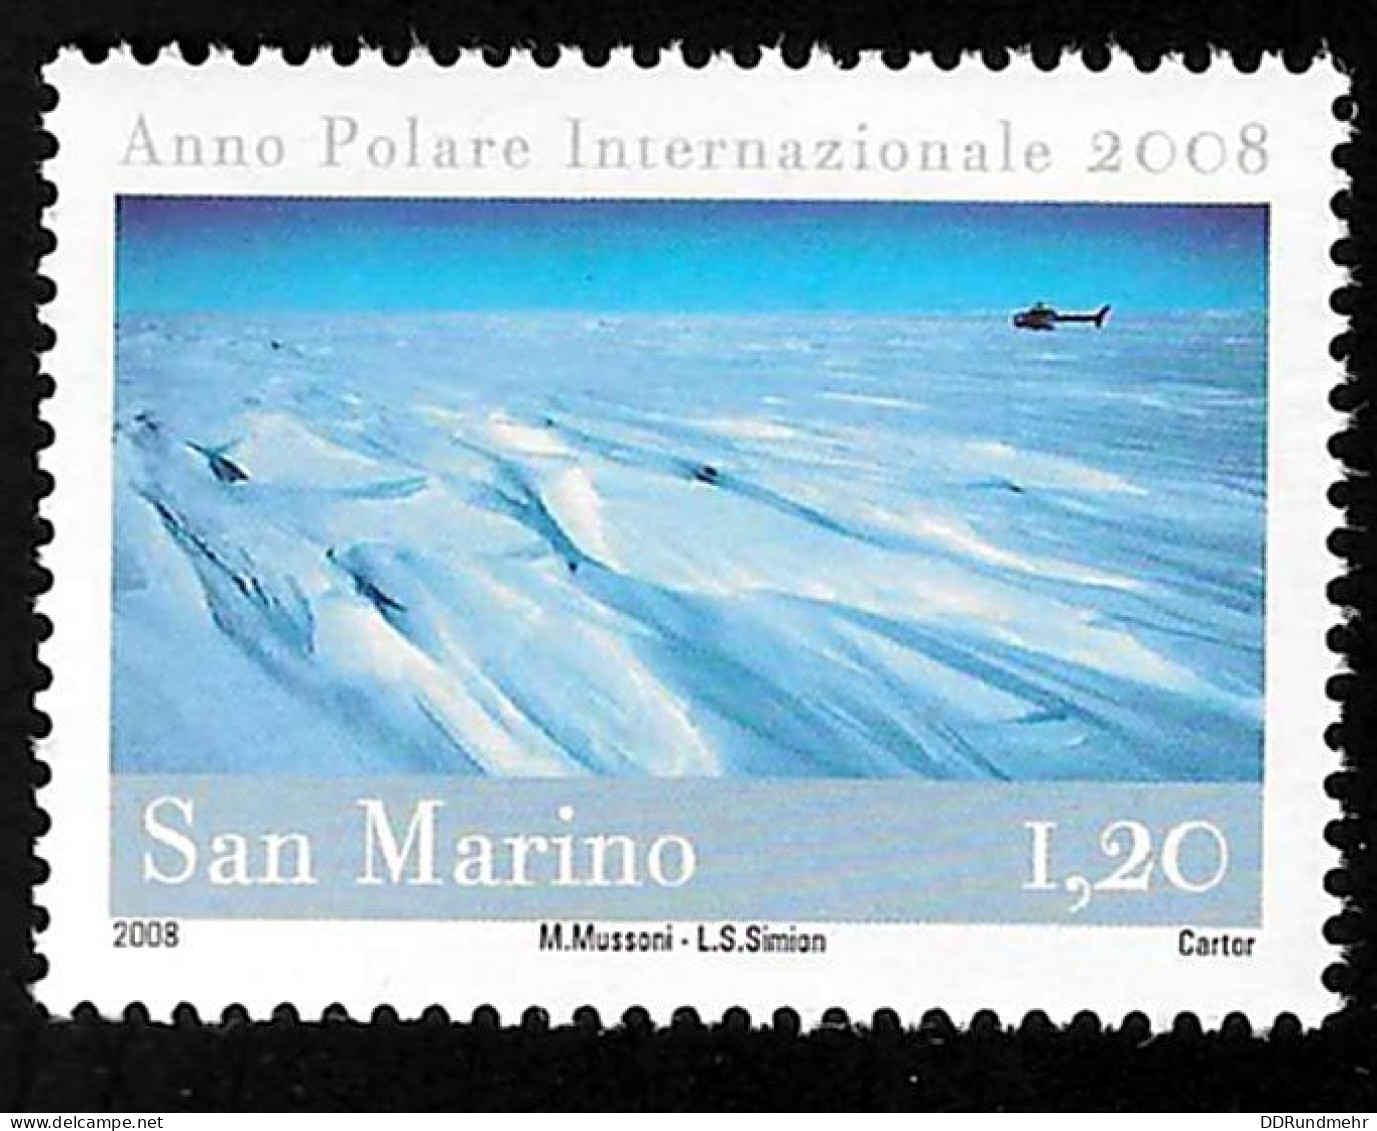 2008 Polar Year  Michel SM 2360 Stamp Number SM 1770 Yvert Et Tellier SM 2153 Stanley Gibbons SM 2186 Xx MNH - Ungebraucht